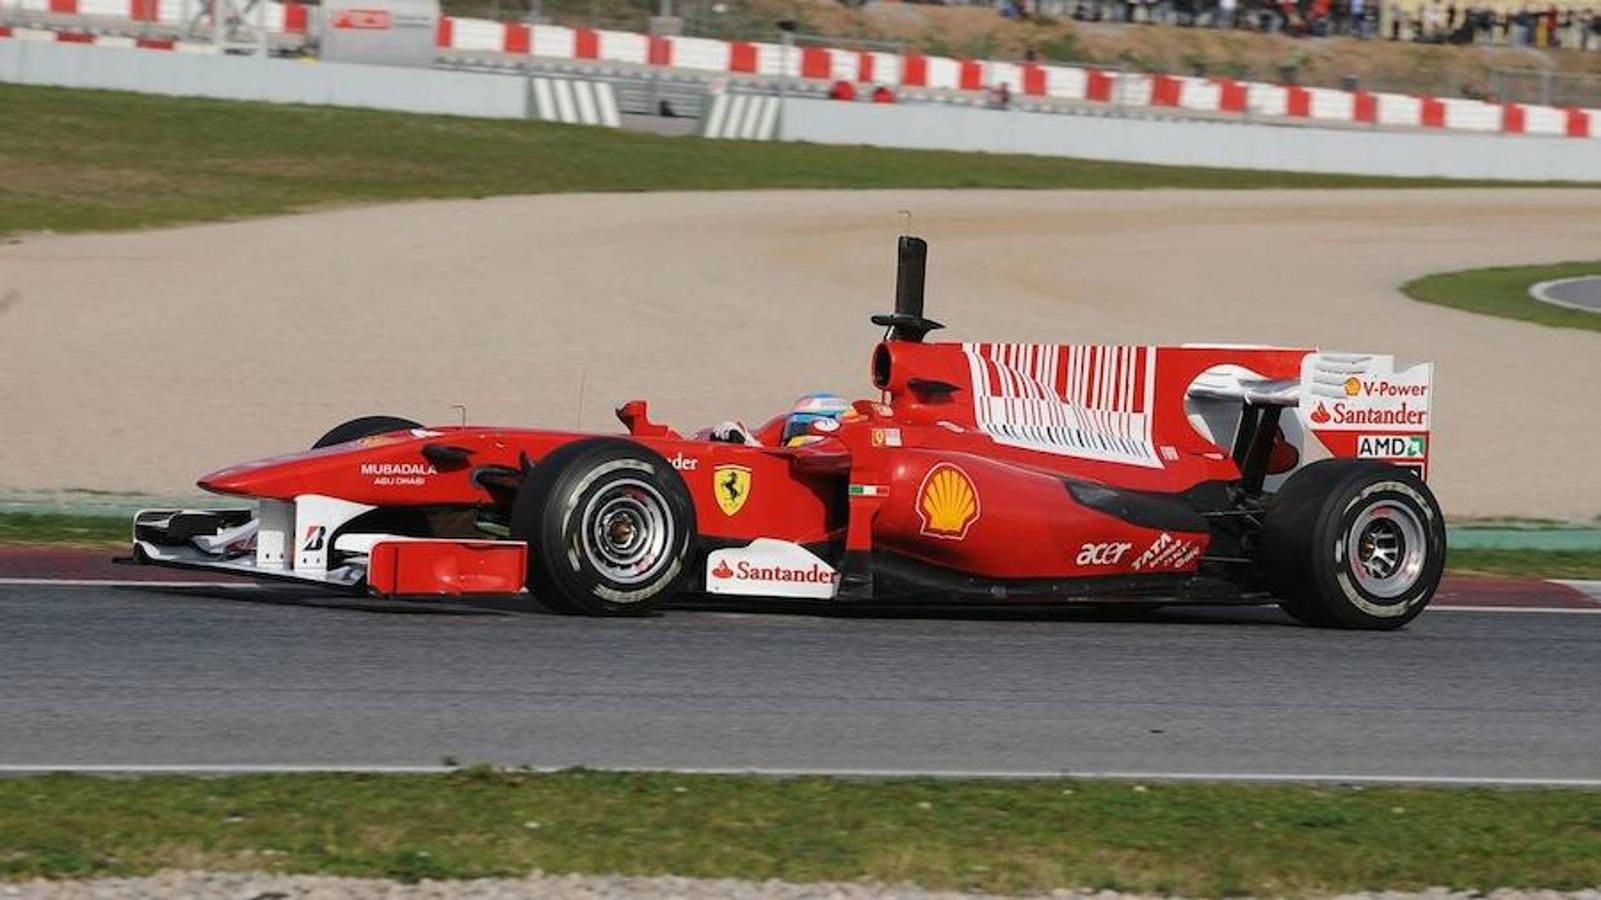 Subcampeonato en el debut con Ferrari. En 2010, tras meses de especulaciones, firma con la Escudería Ferrari. Con los italianos estuvo a punto de lograr su tercer campeonato, pero en la última carrera en Abu Dhabi se lo impidió Sebastian Vettel.